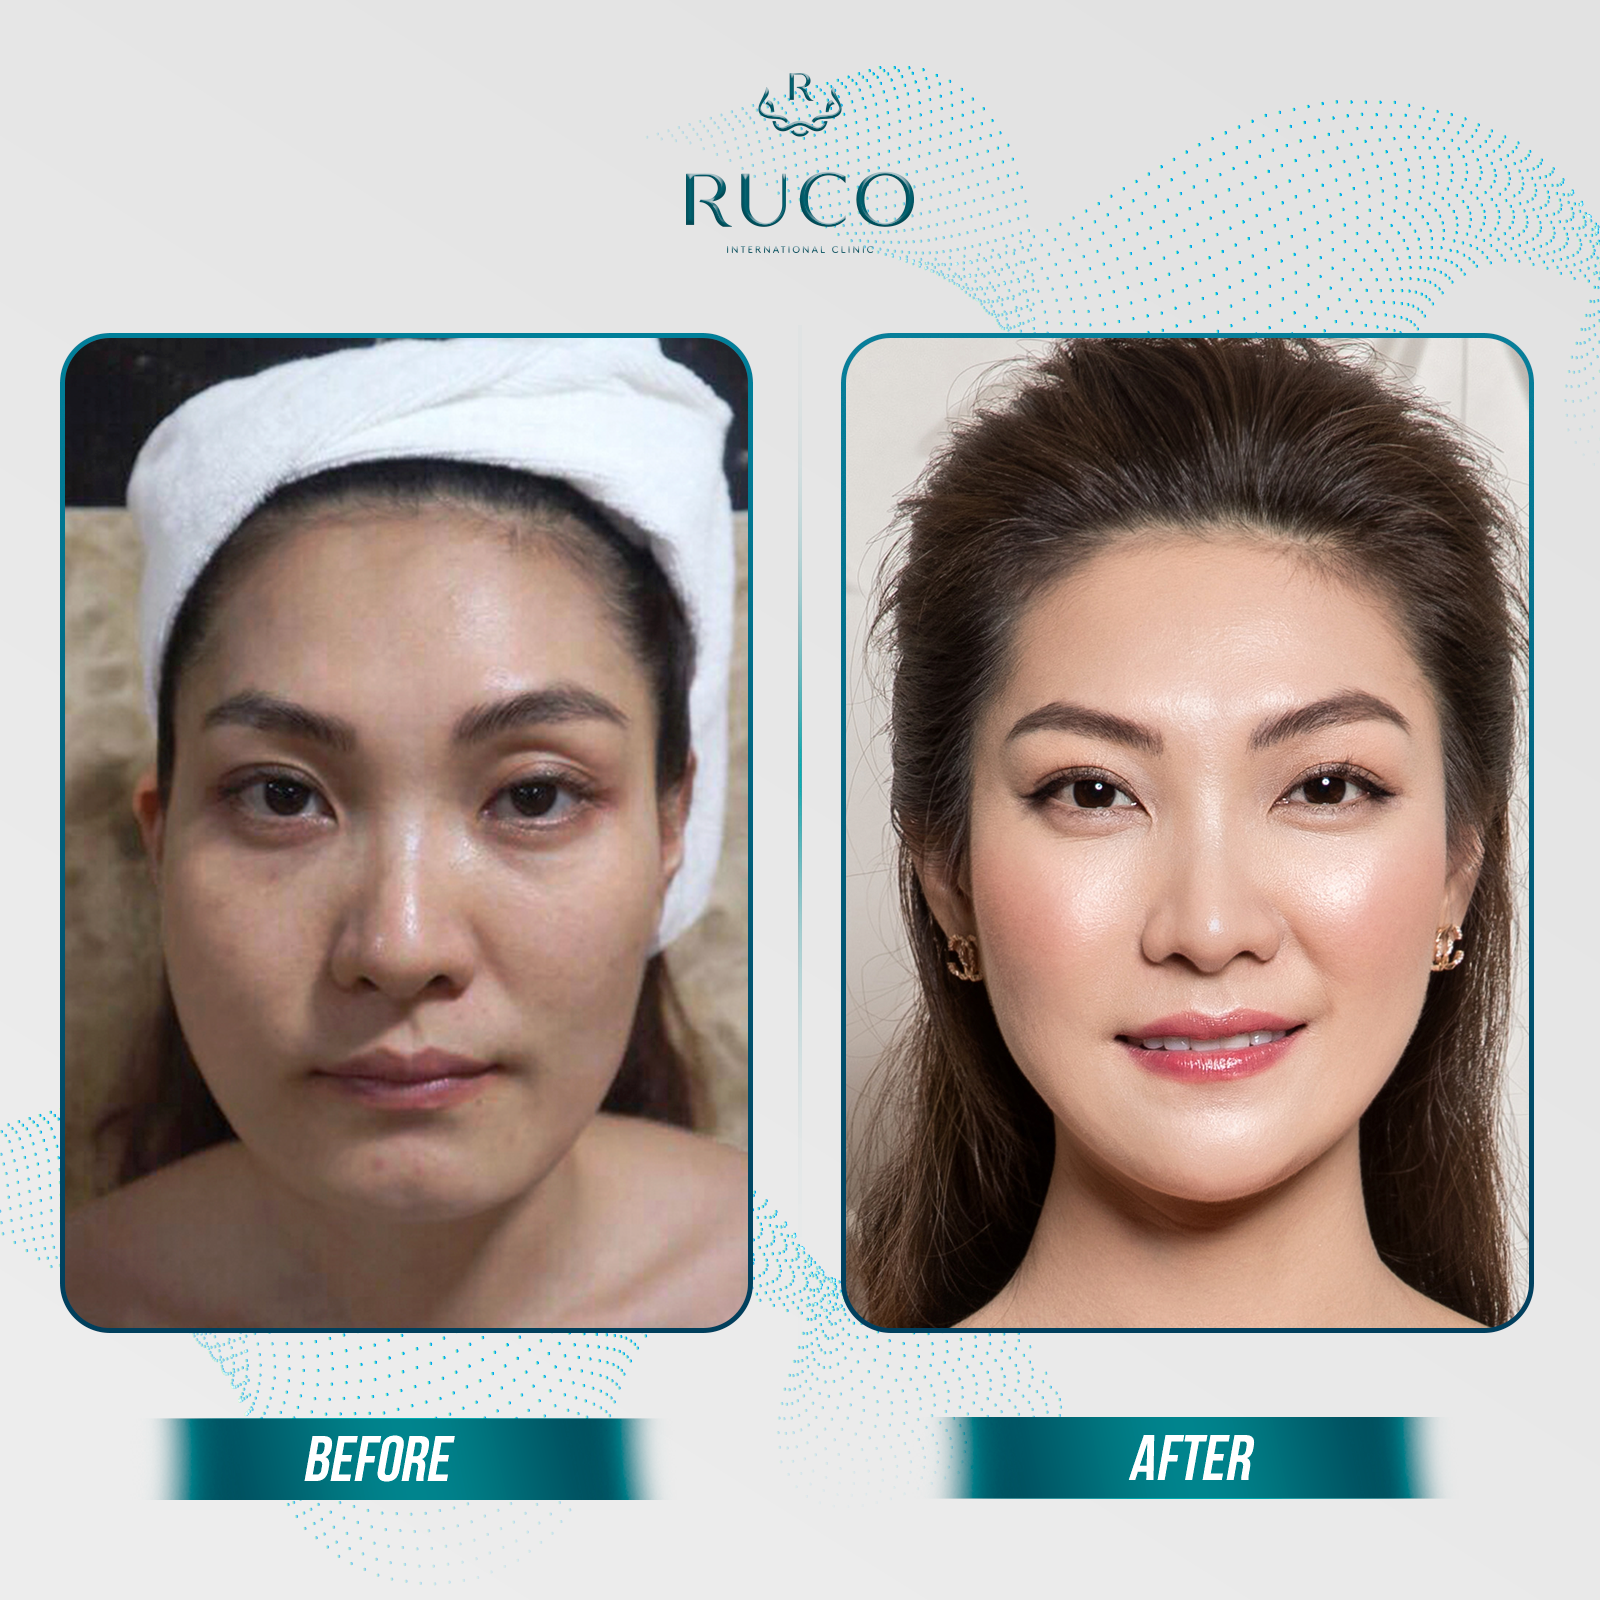 Sự thay đổi rõ rệt mà Luxury Skin mang lại cho khách hàng trải nghiệm tại RUCO.